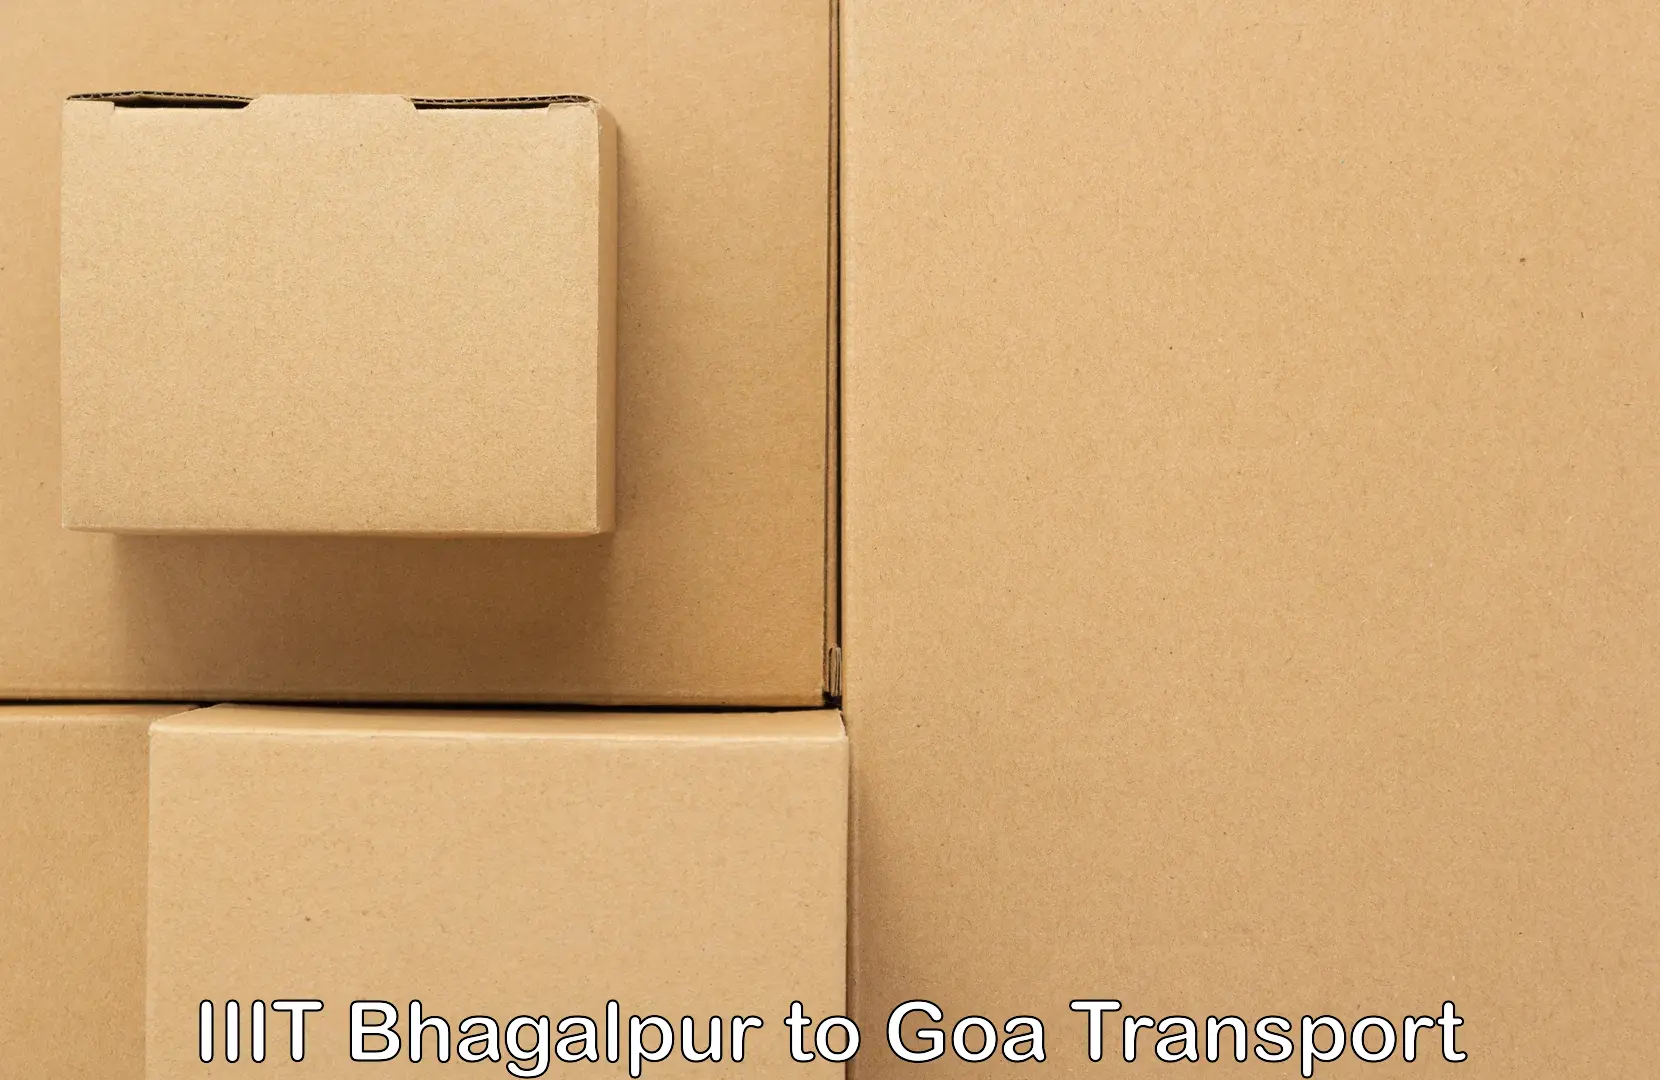 Nearest transport service IIIT Bhagalpur to Margao